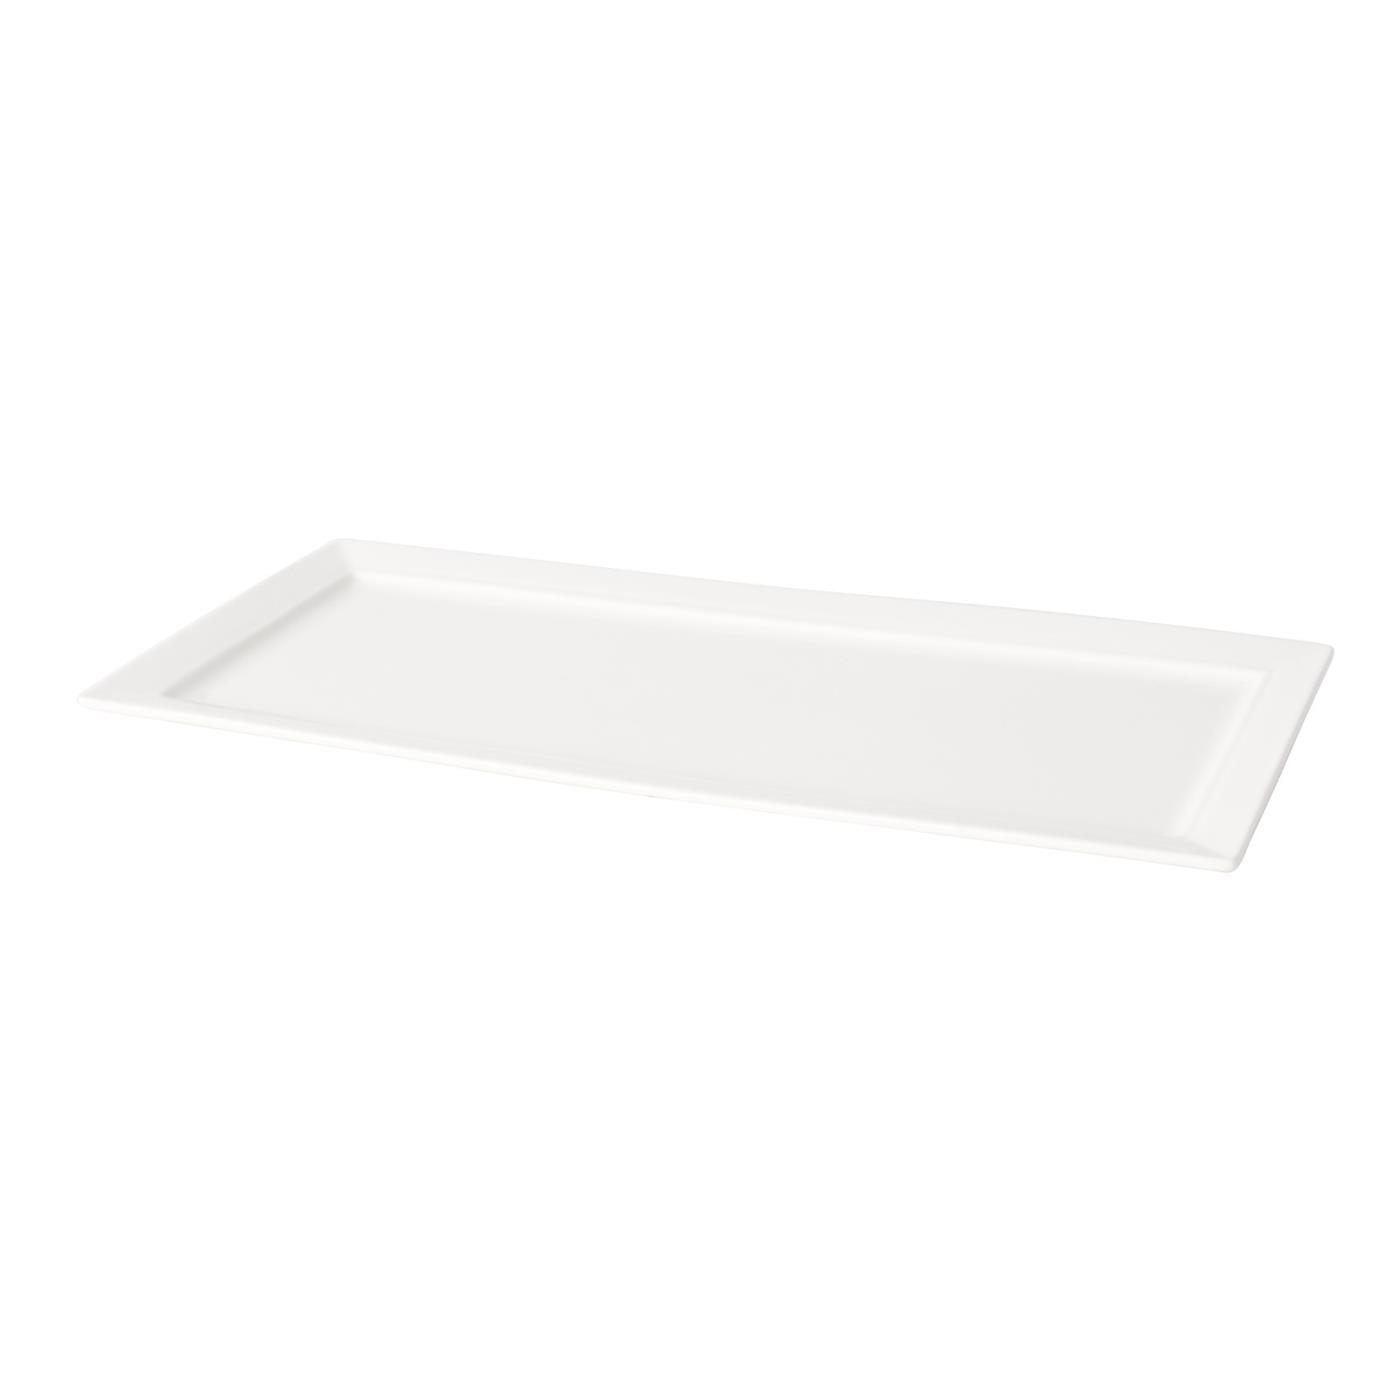 White Ceramic Rectangular Platter - 7" x 16"